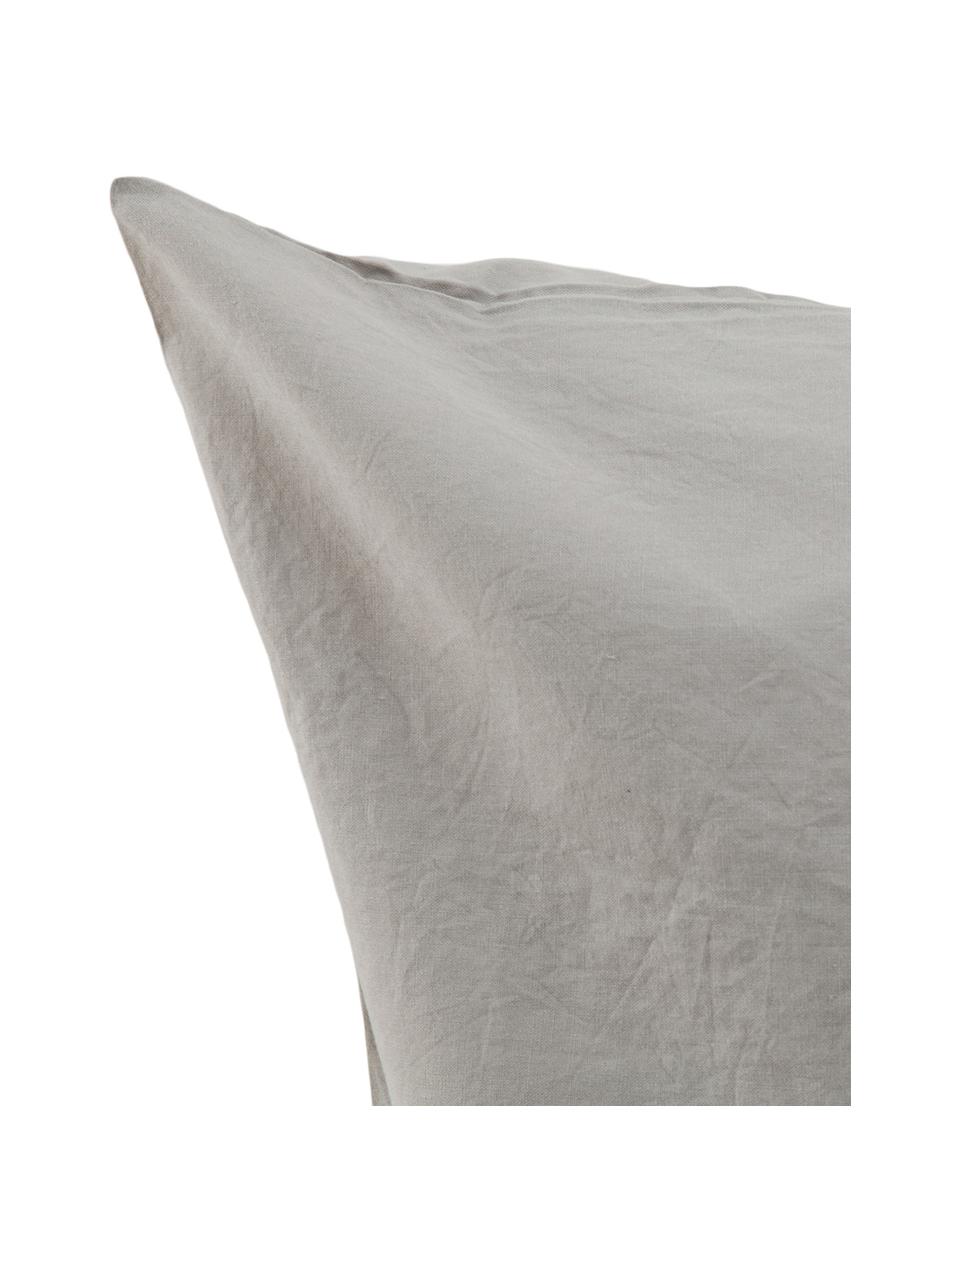 Parure copripiumino in cotone effetto stone washed Velle, Tessuto: cotone ranforce, Fronte e retro: grigio chiaro, 155 x 200 cm + 1 federa 50 x 80 cm